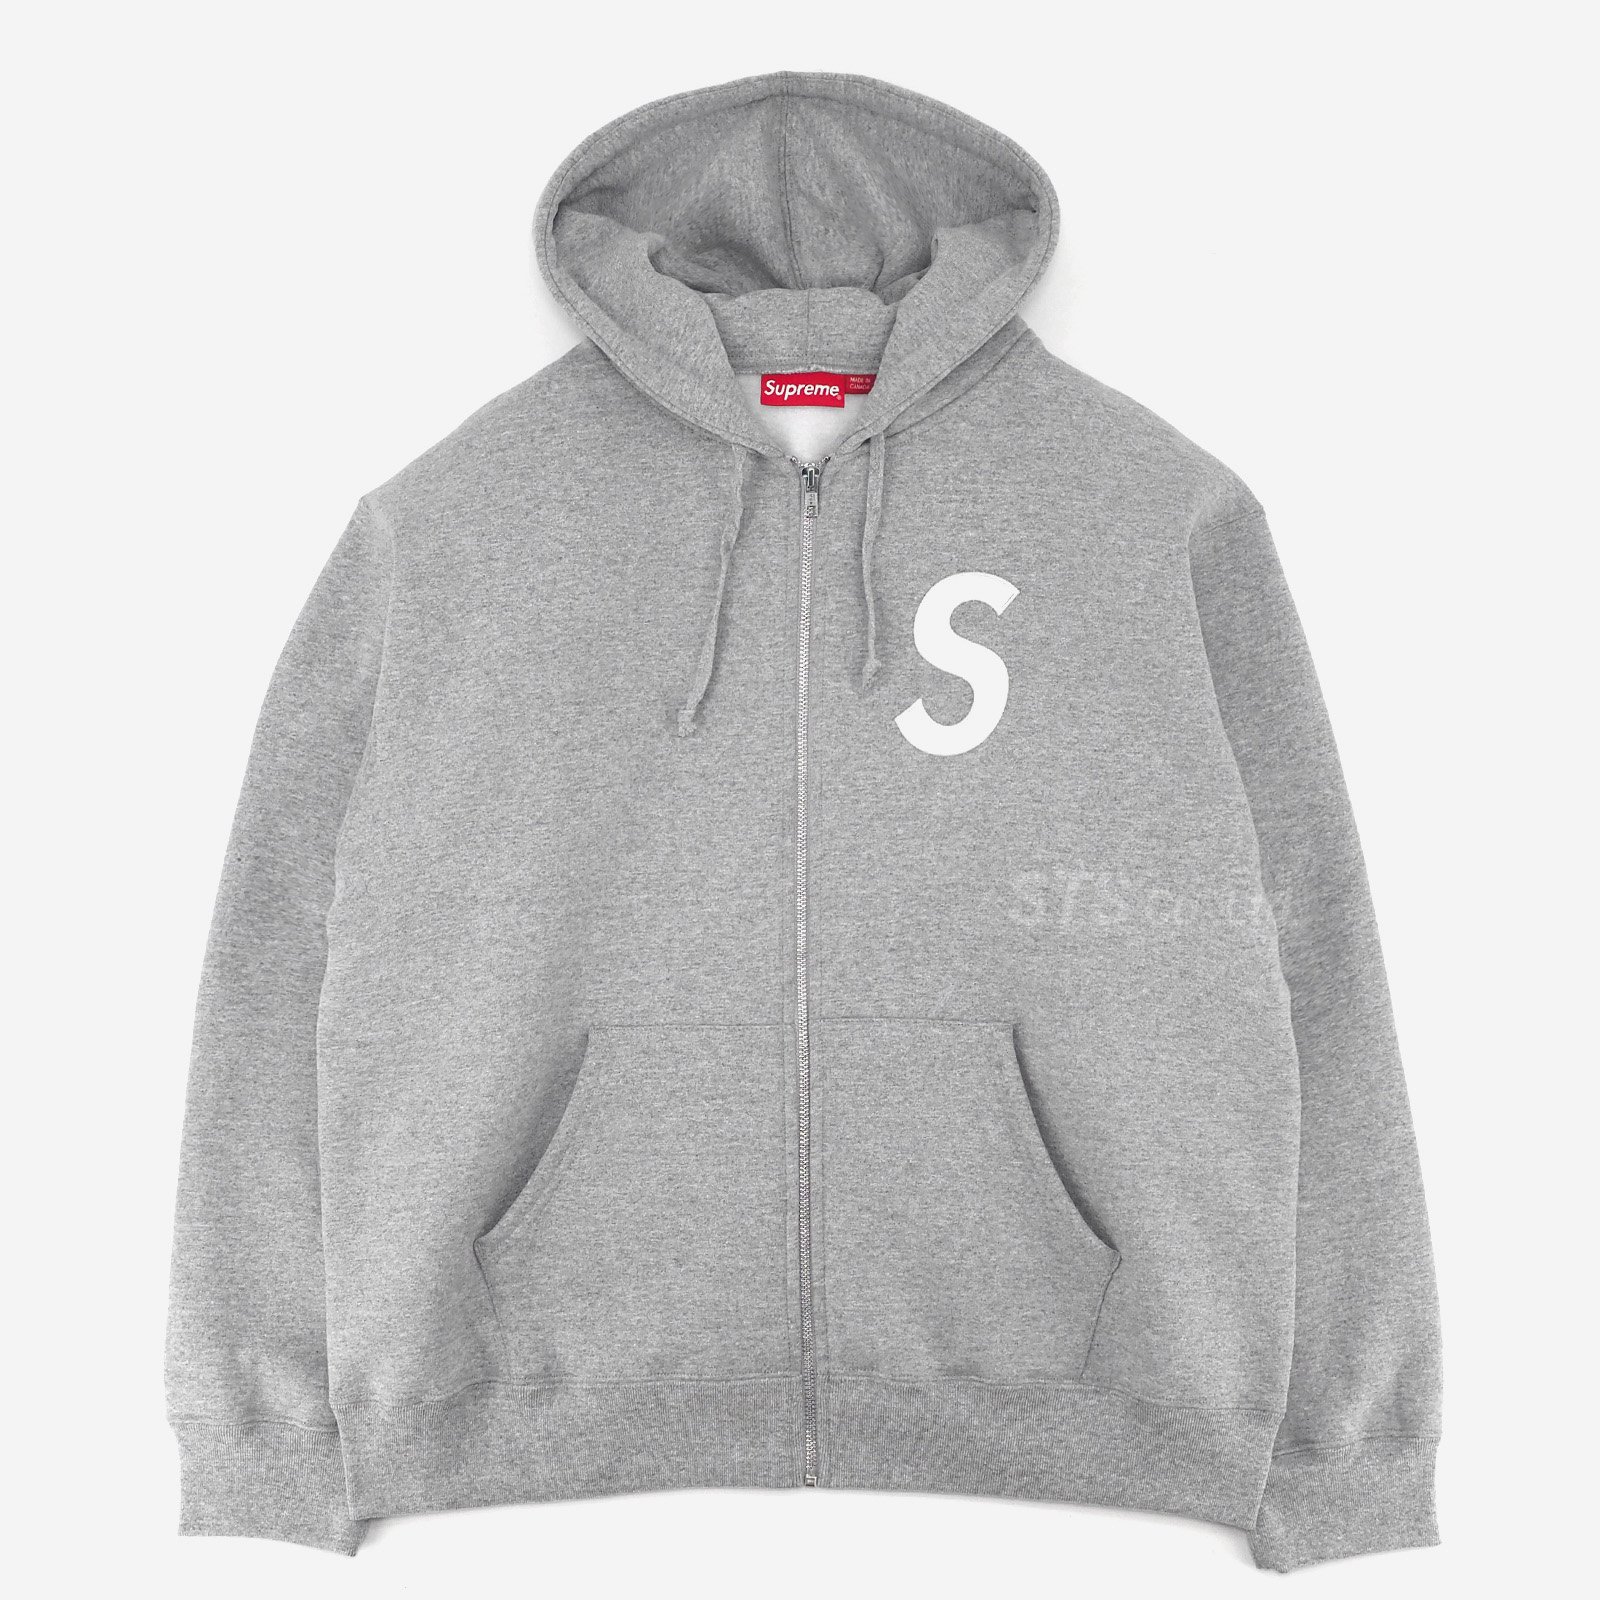 Supreme  S Logo Zip Up Hooded Sweatshirt2万円では無理ですか